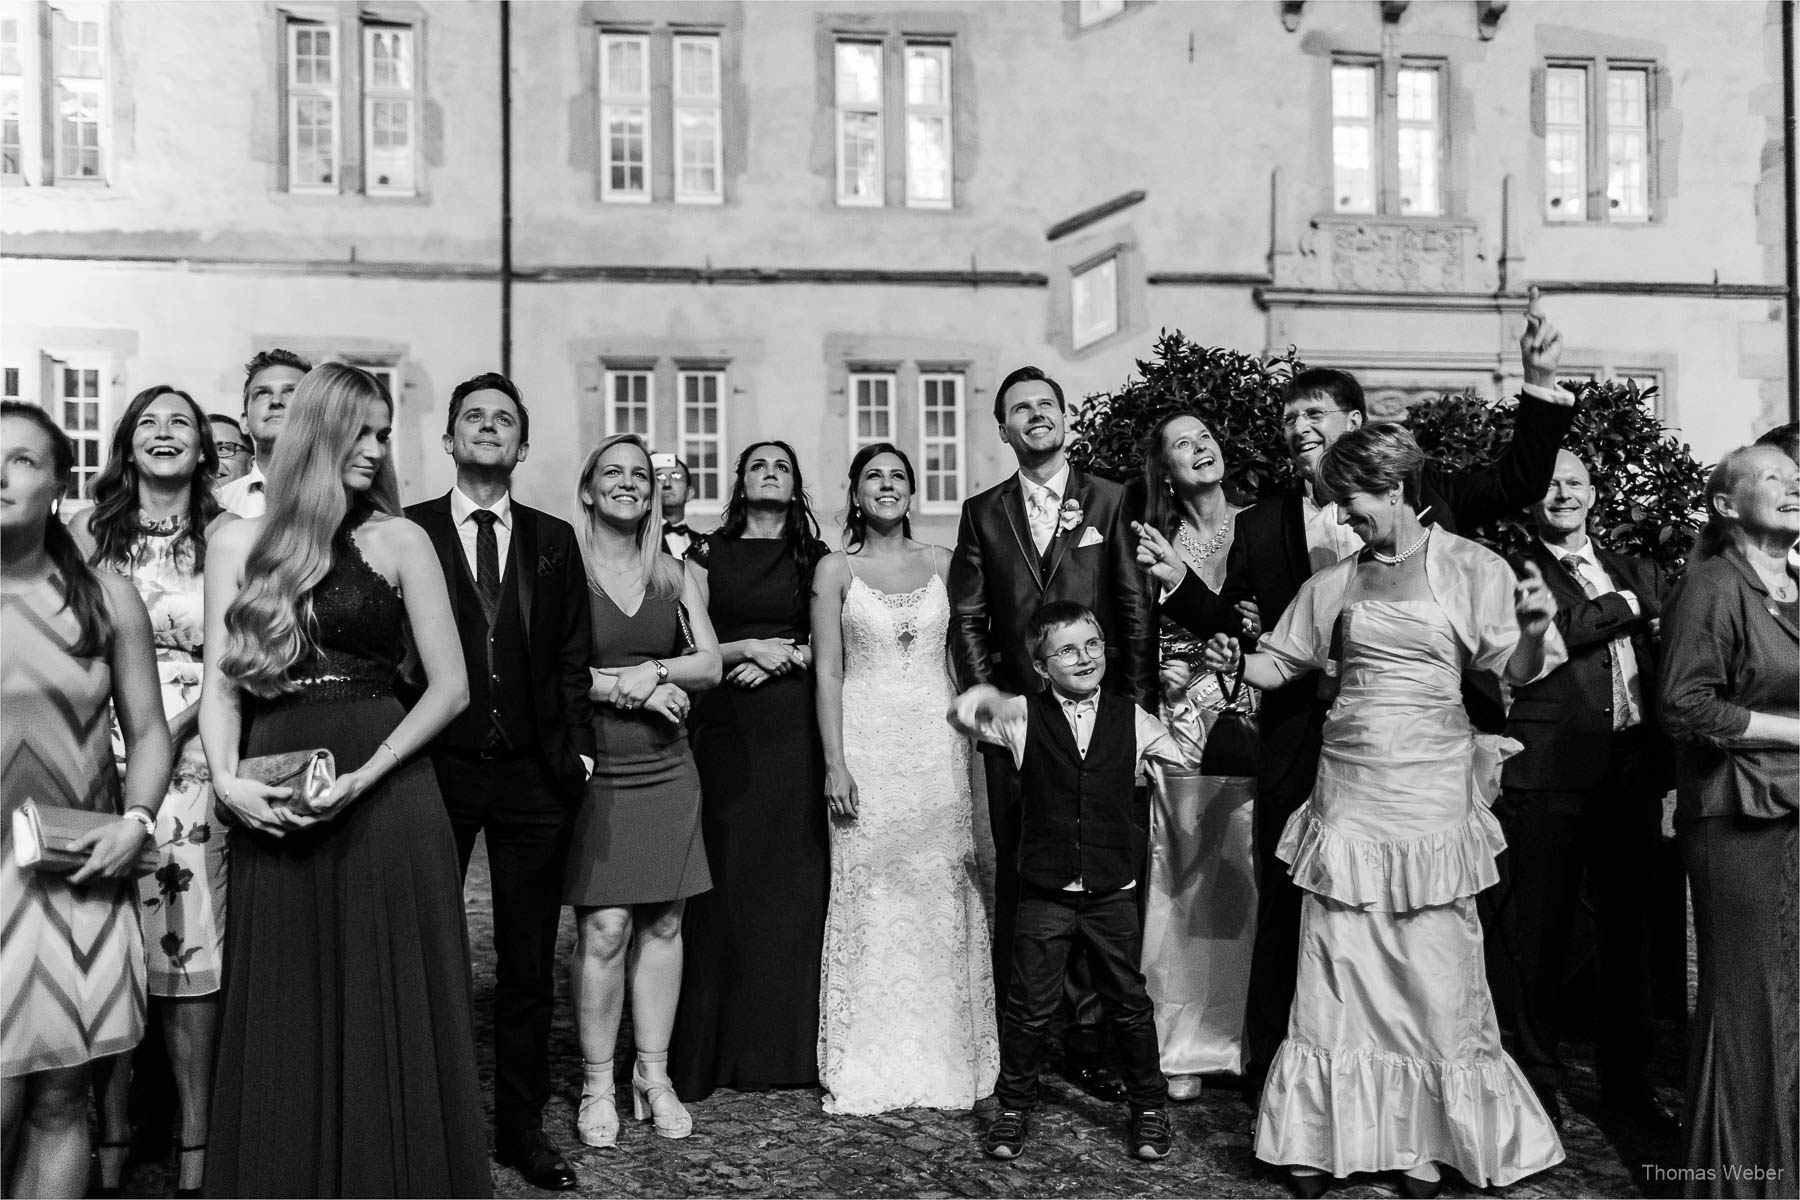 Hochzeitsfotograf im Schlosshotel Münchhausen in Aerzen, Hochzeitsfotograf Thomas Weber aus Oldenburg